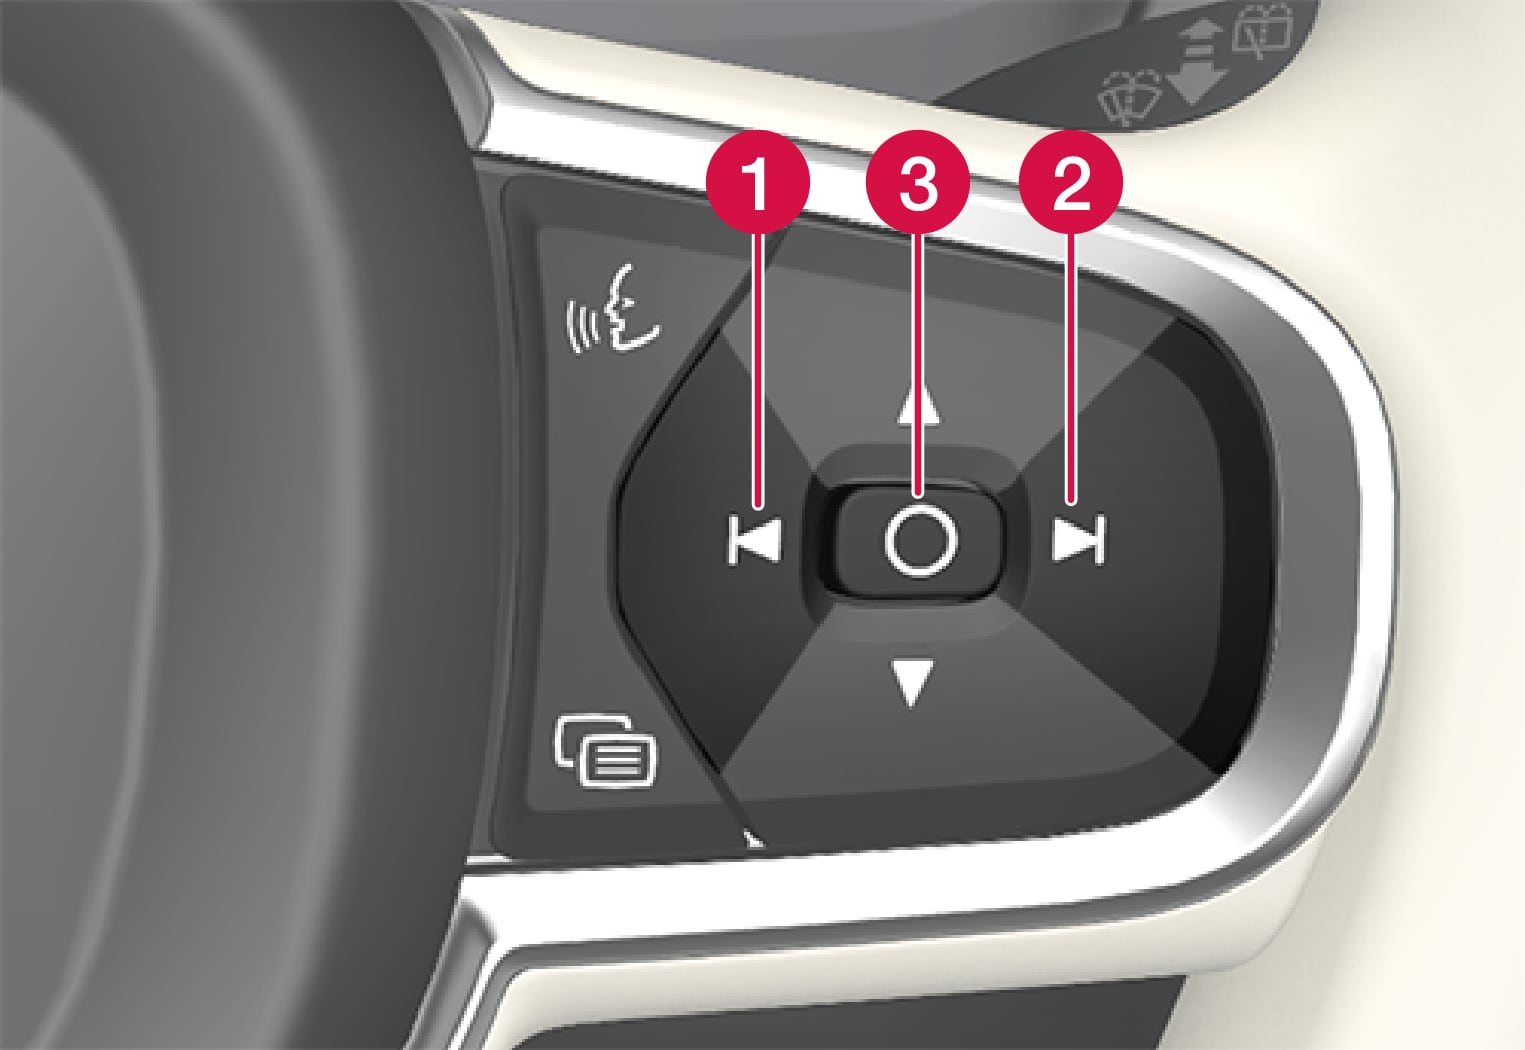 P5-Head Up Display, settings on steering wheel